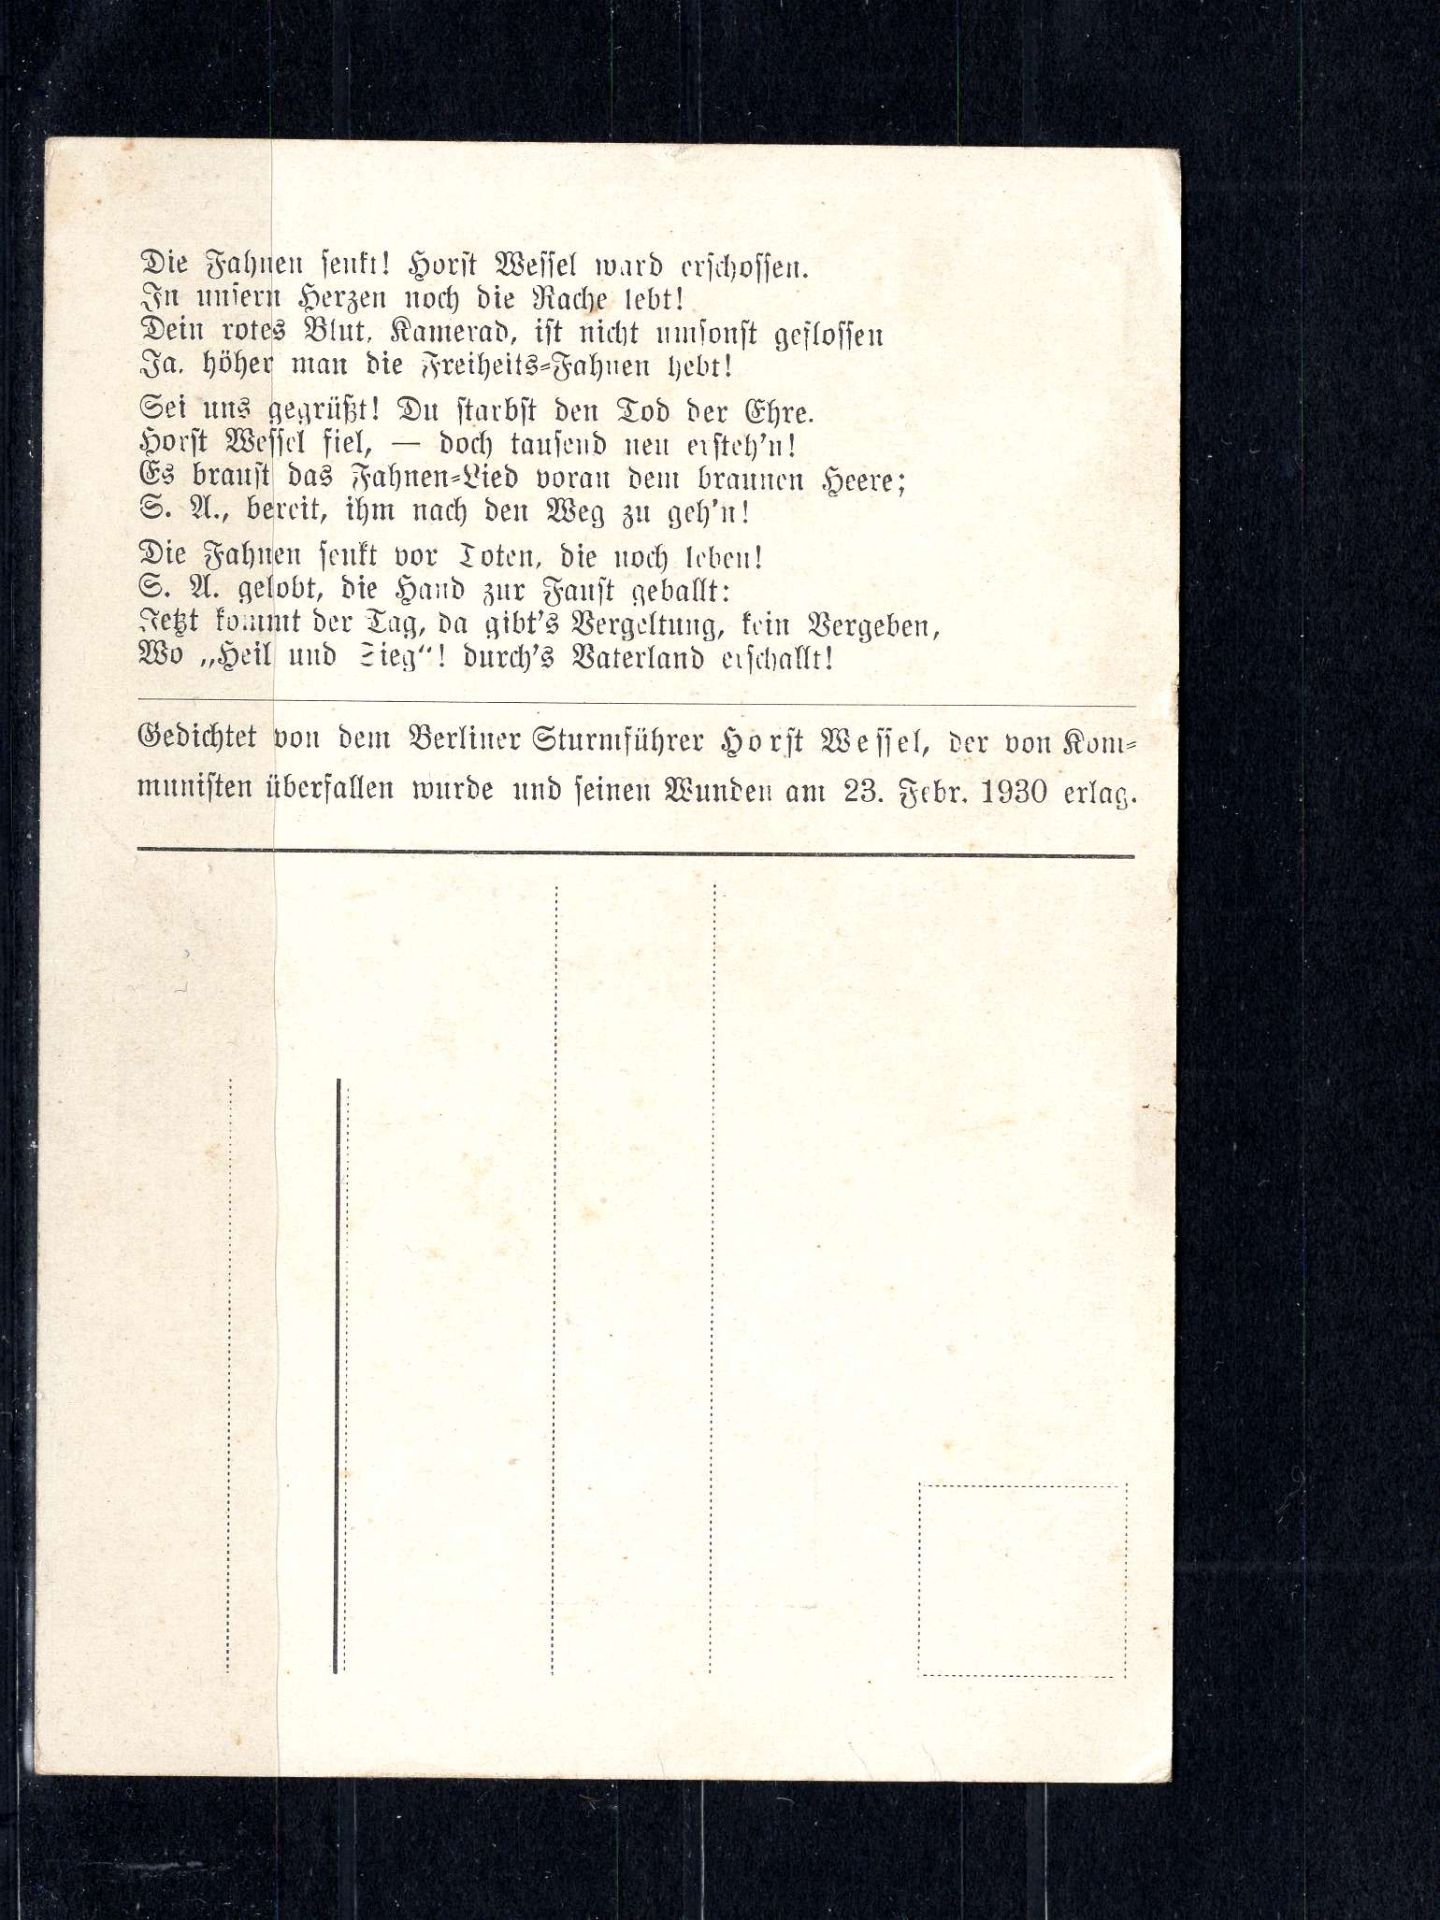 Drittes Reich, ungebrauchte Original - Karte mit Horst Wessel - Lied. Gute Erhaltung. - Image 2 of 2